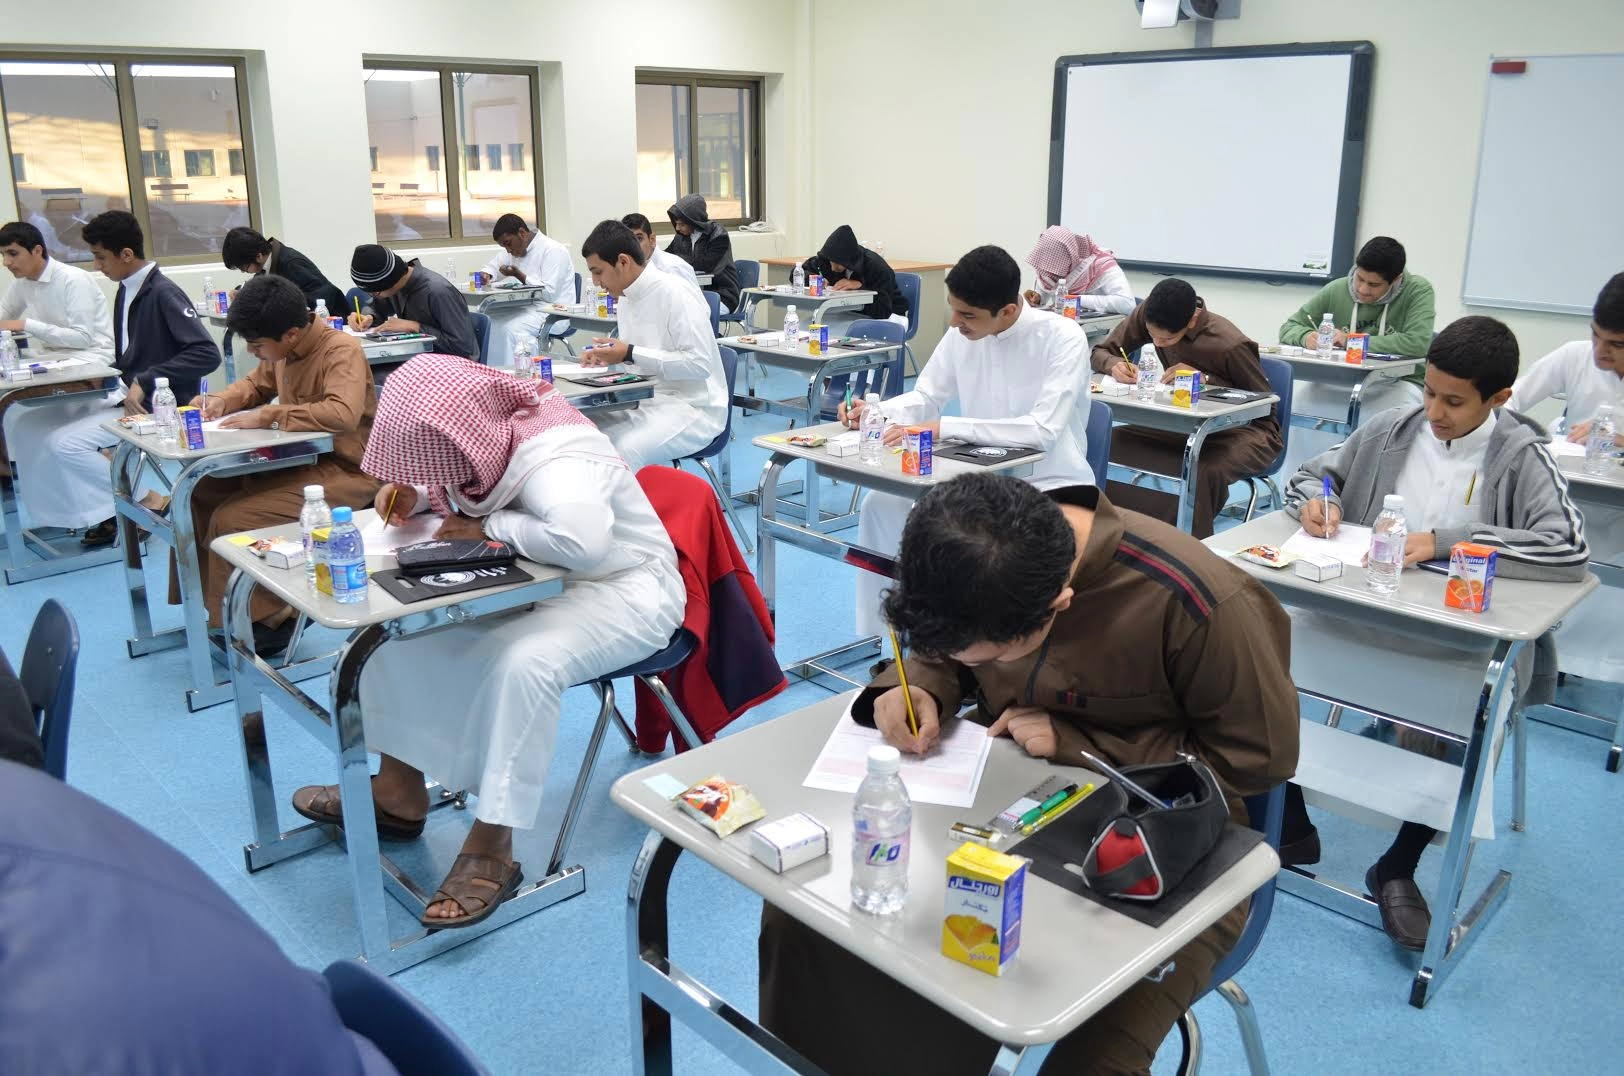 وزارة التعليم السعودية توضح .. تعليق الدراسة في شهر رمضان